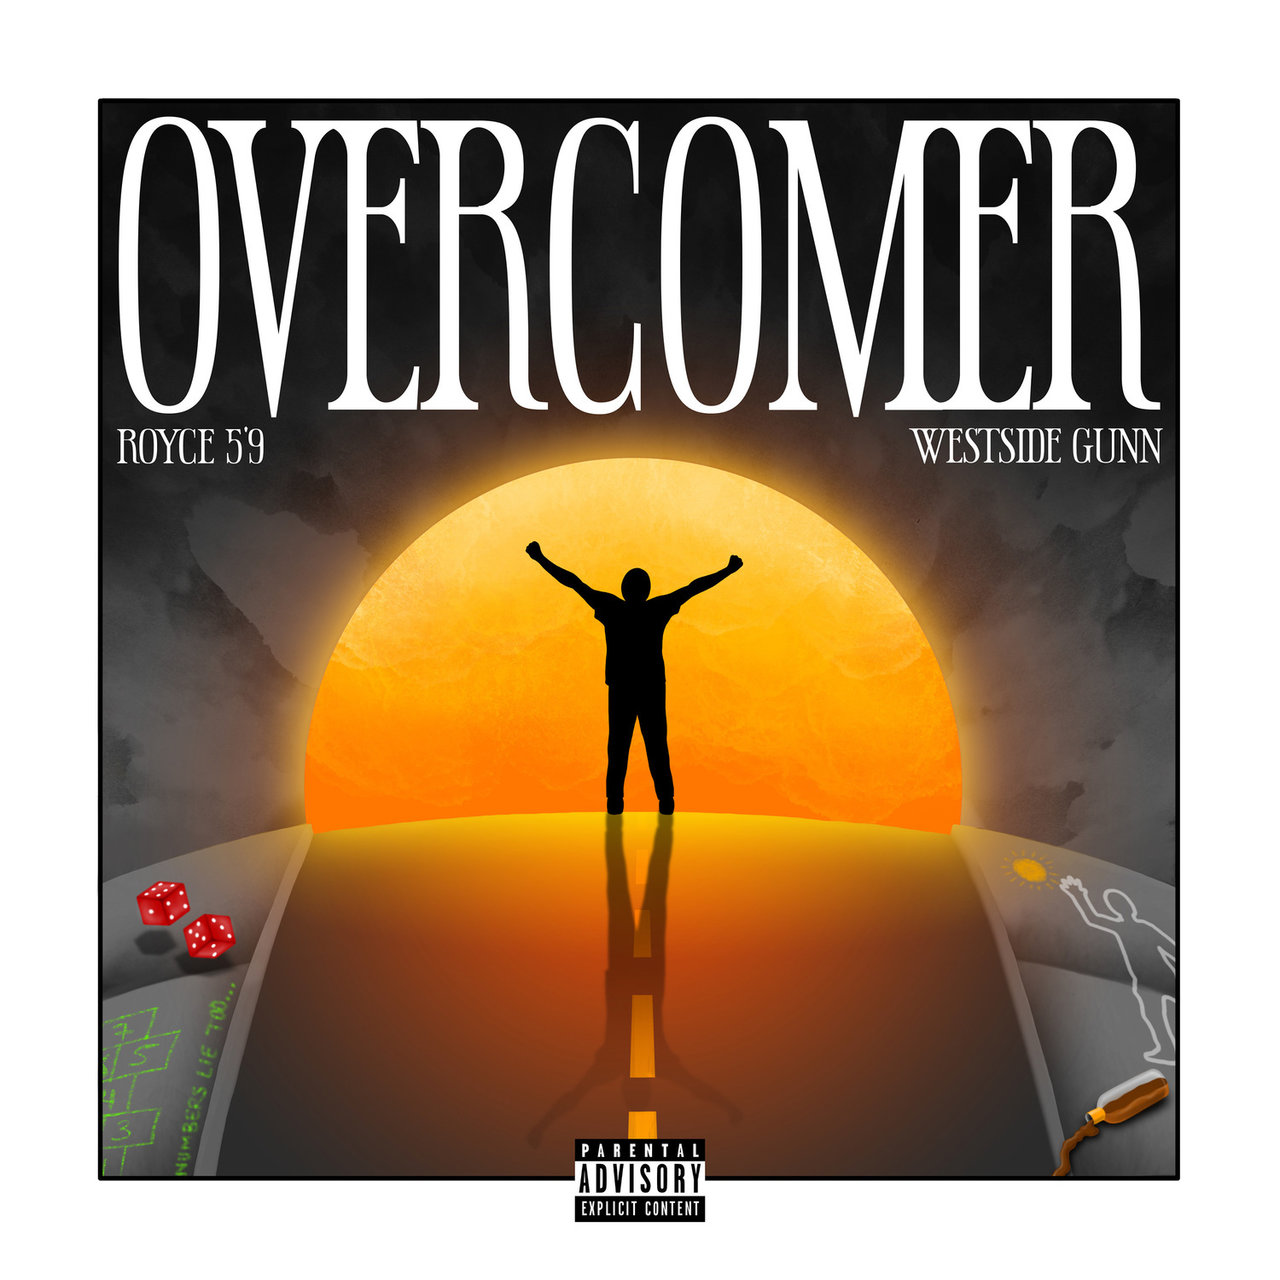 Royce da 5'9" - Overcomer (ft. Westside Gunn) (Cover)